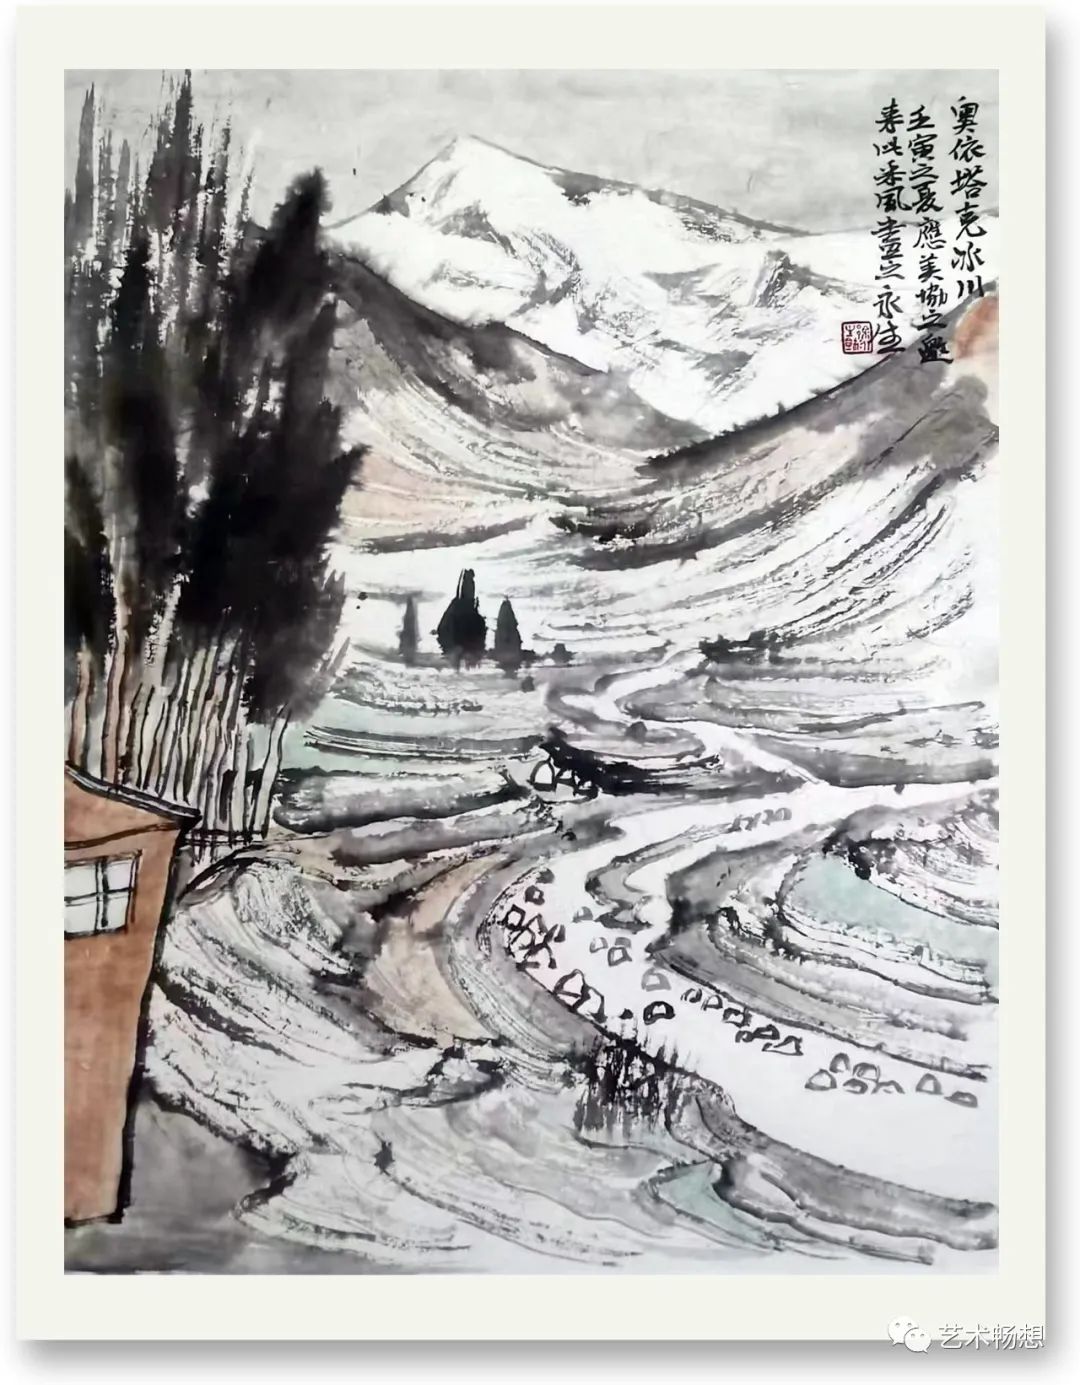 冰山上的齐鲁来客——著名画家徐永生写生新疆·蒙山迥异风光